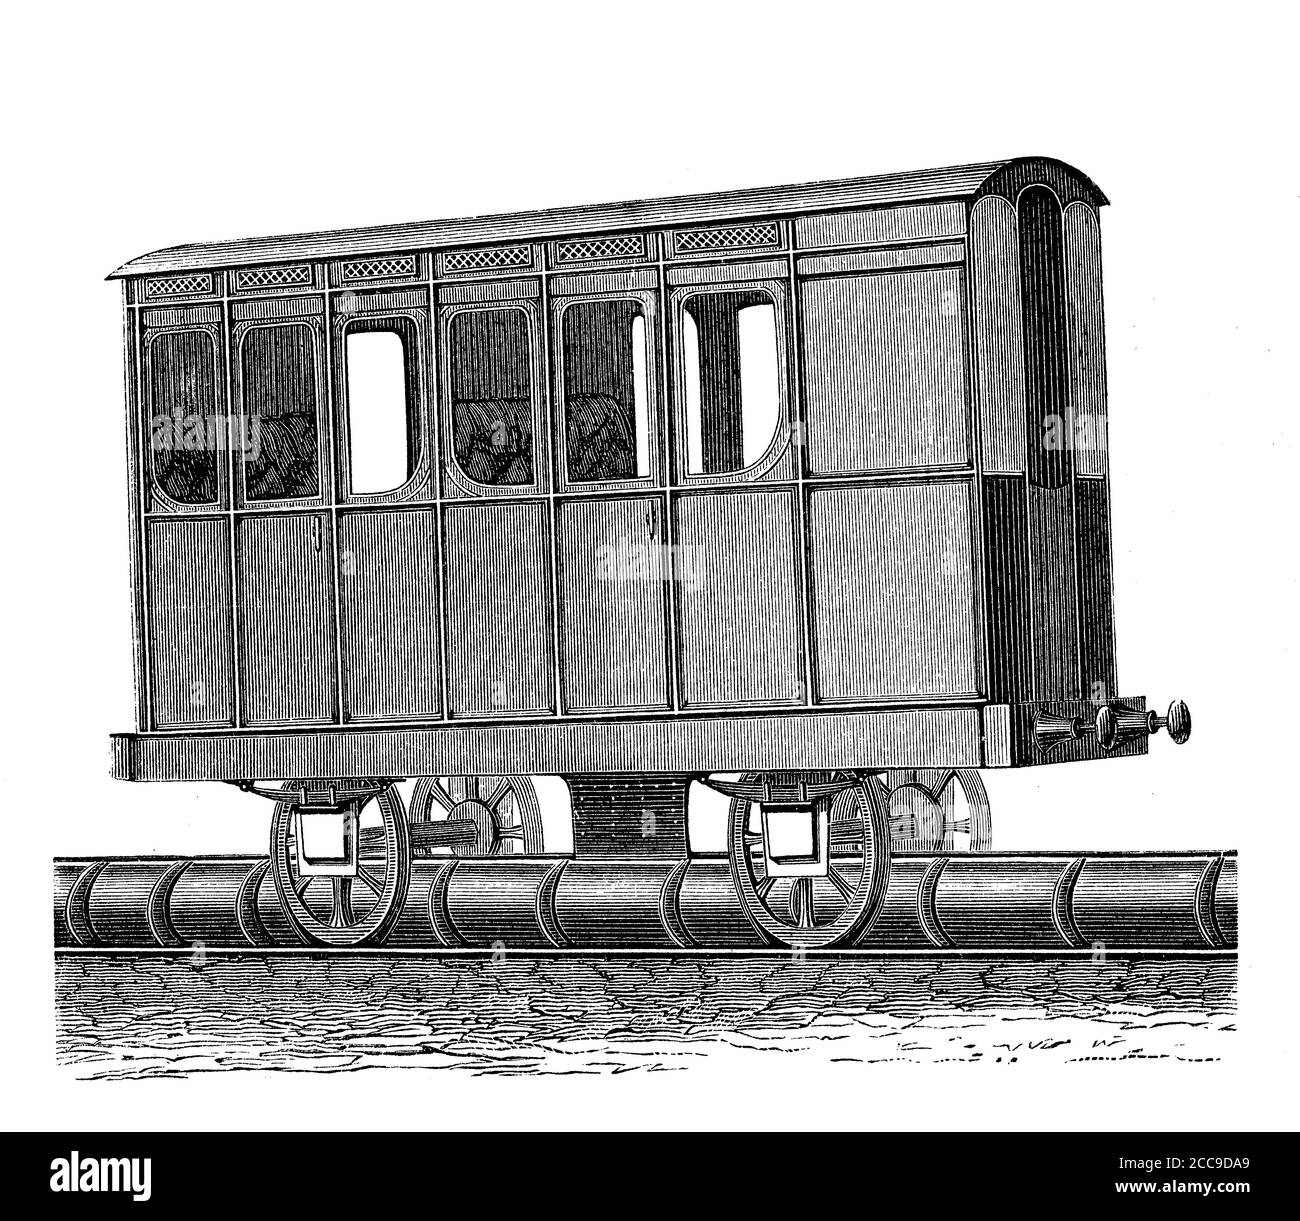 Le chemin de fer atmosphérique de Saint Germain à Paris avec chariot à piston a ouvert avec succès en 1837 avec une ligne de 19 km, mais a été abandonné en 1860 avec l'arrivée des locomotives à vapeur Banque D'Images